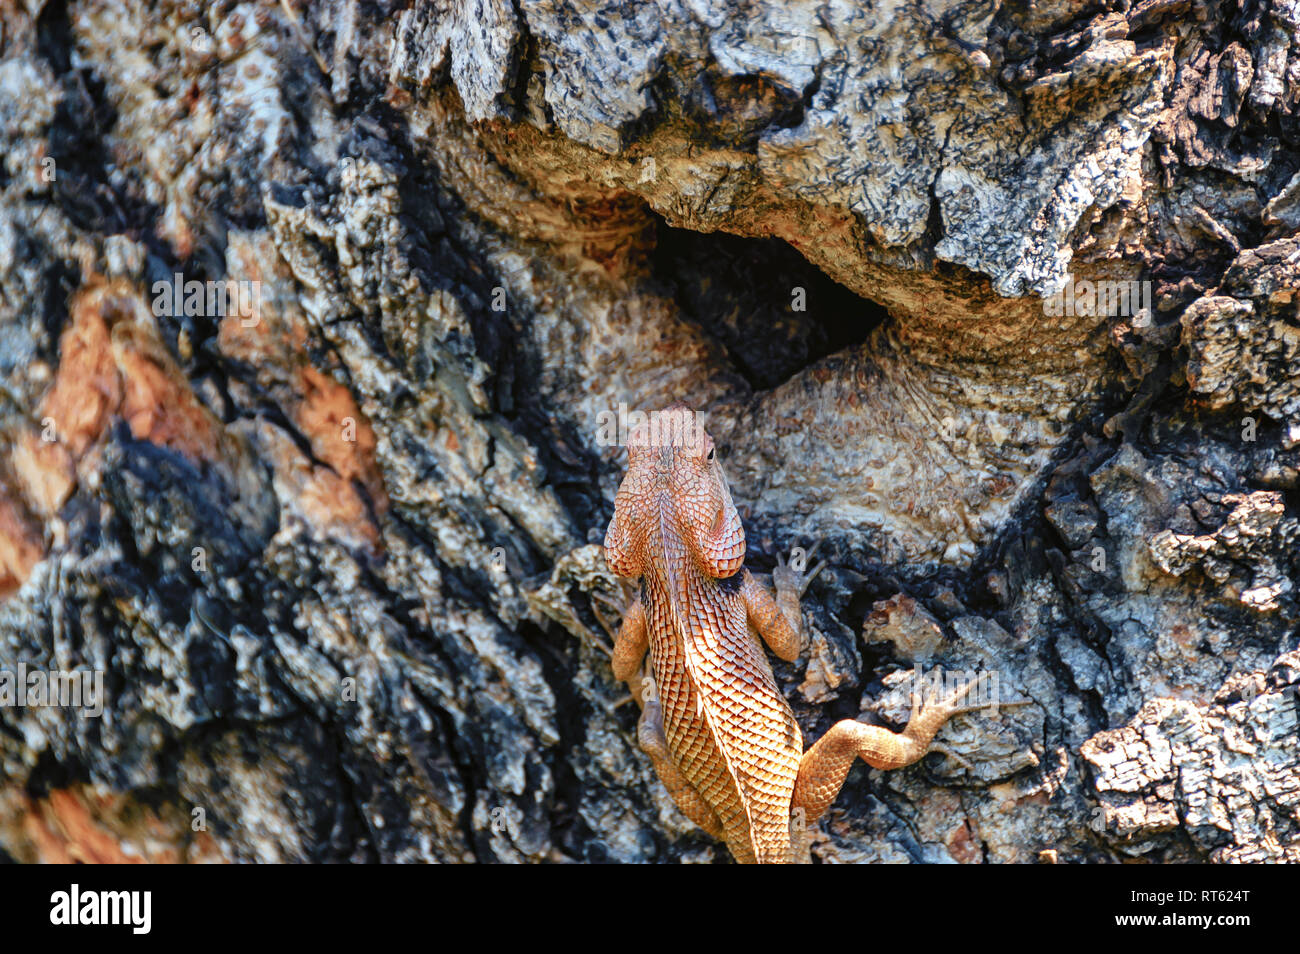 Un gros plan de la tête et de la région dorsale d'un homme oriental garden lizard, Calotes versicolor. Teinte cramoisie/orange signifie que c'est la saison de reproduction. Banque D'Images